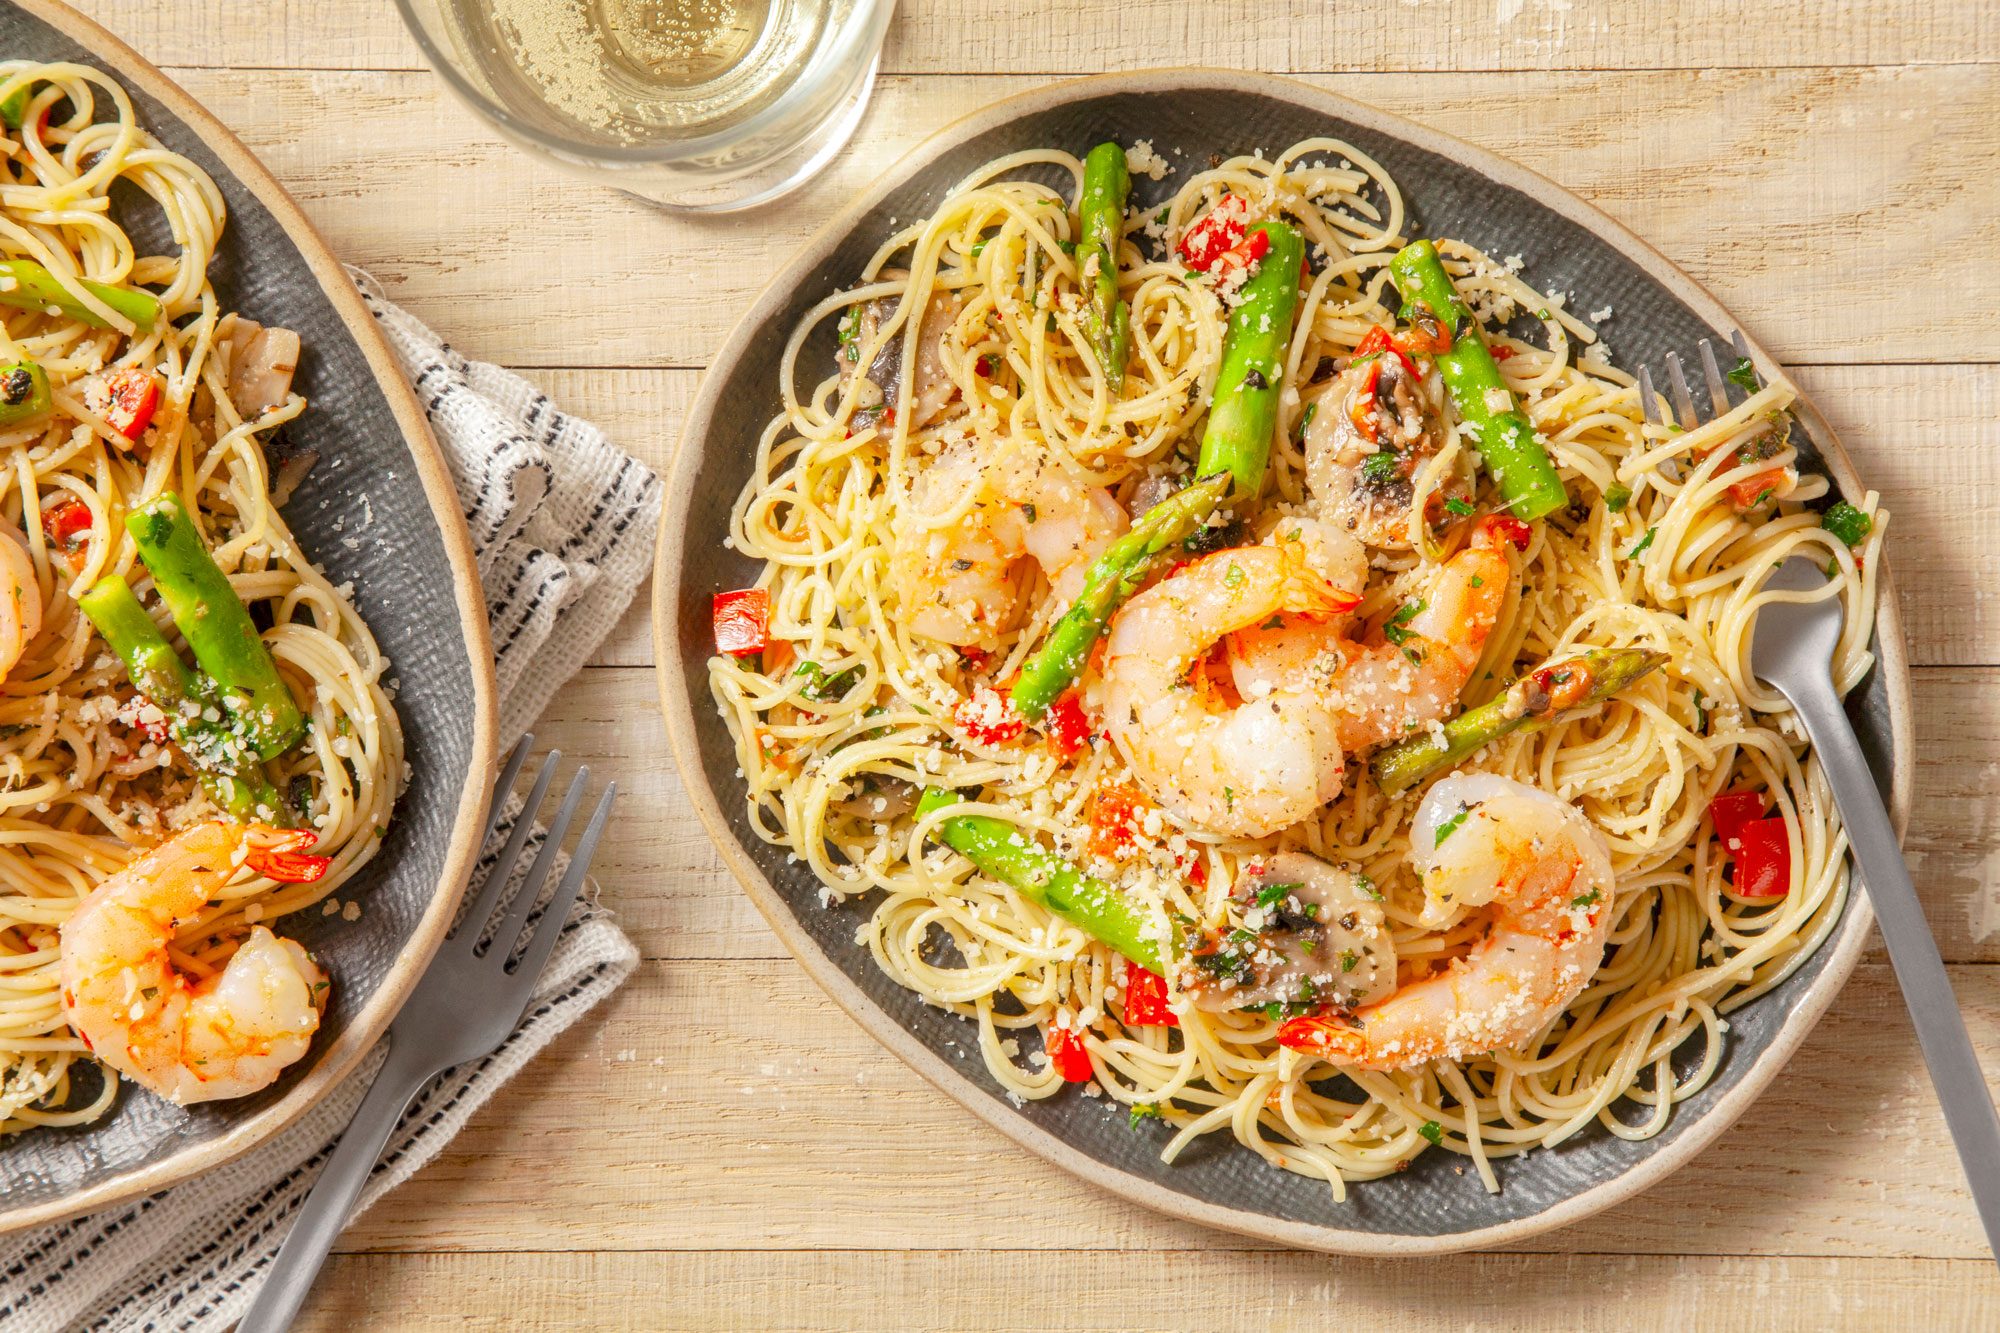 A delicious plate of Shrimp Pasta Primavera served with spaghetti